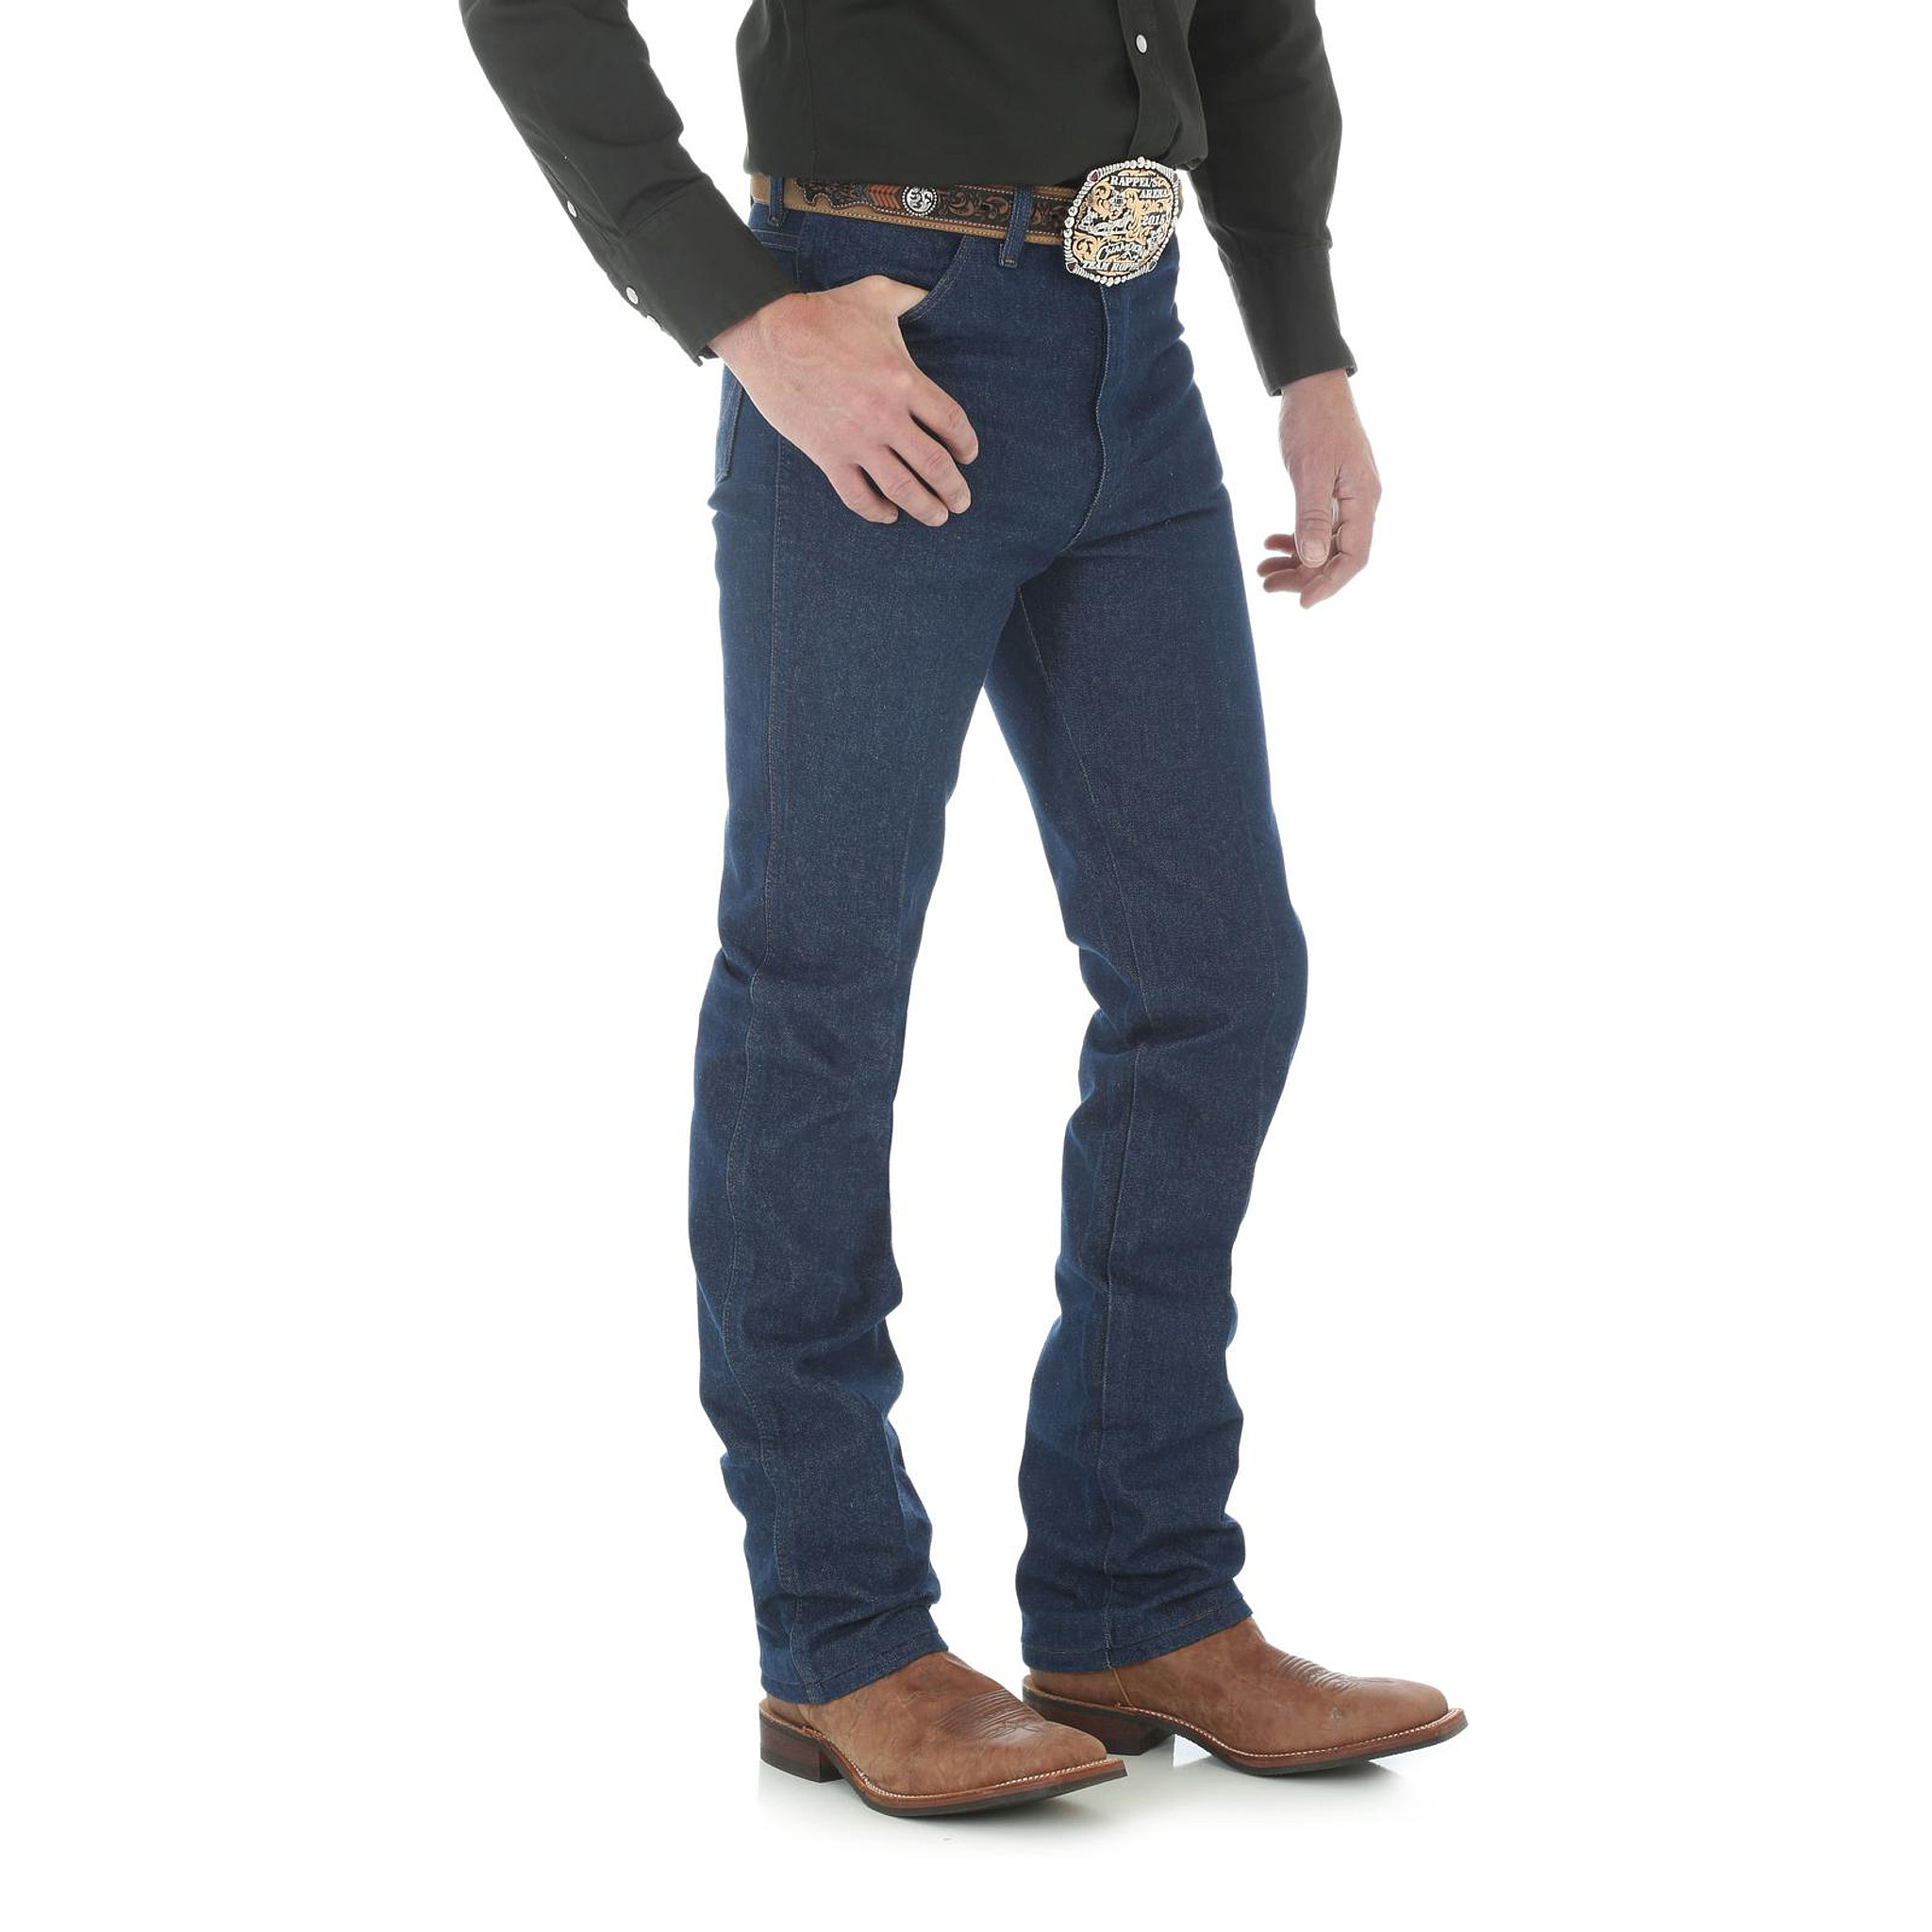 936DEN Wrangler Slim Fit Cowboy Cut Jeans - image 2 of 3